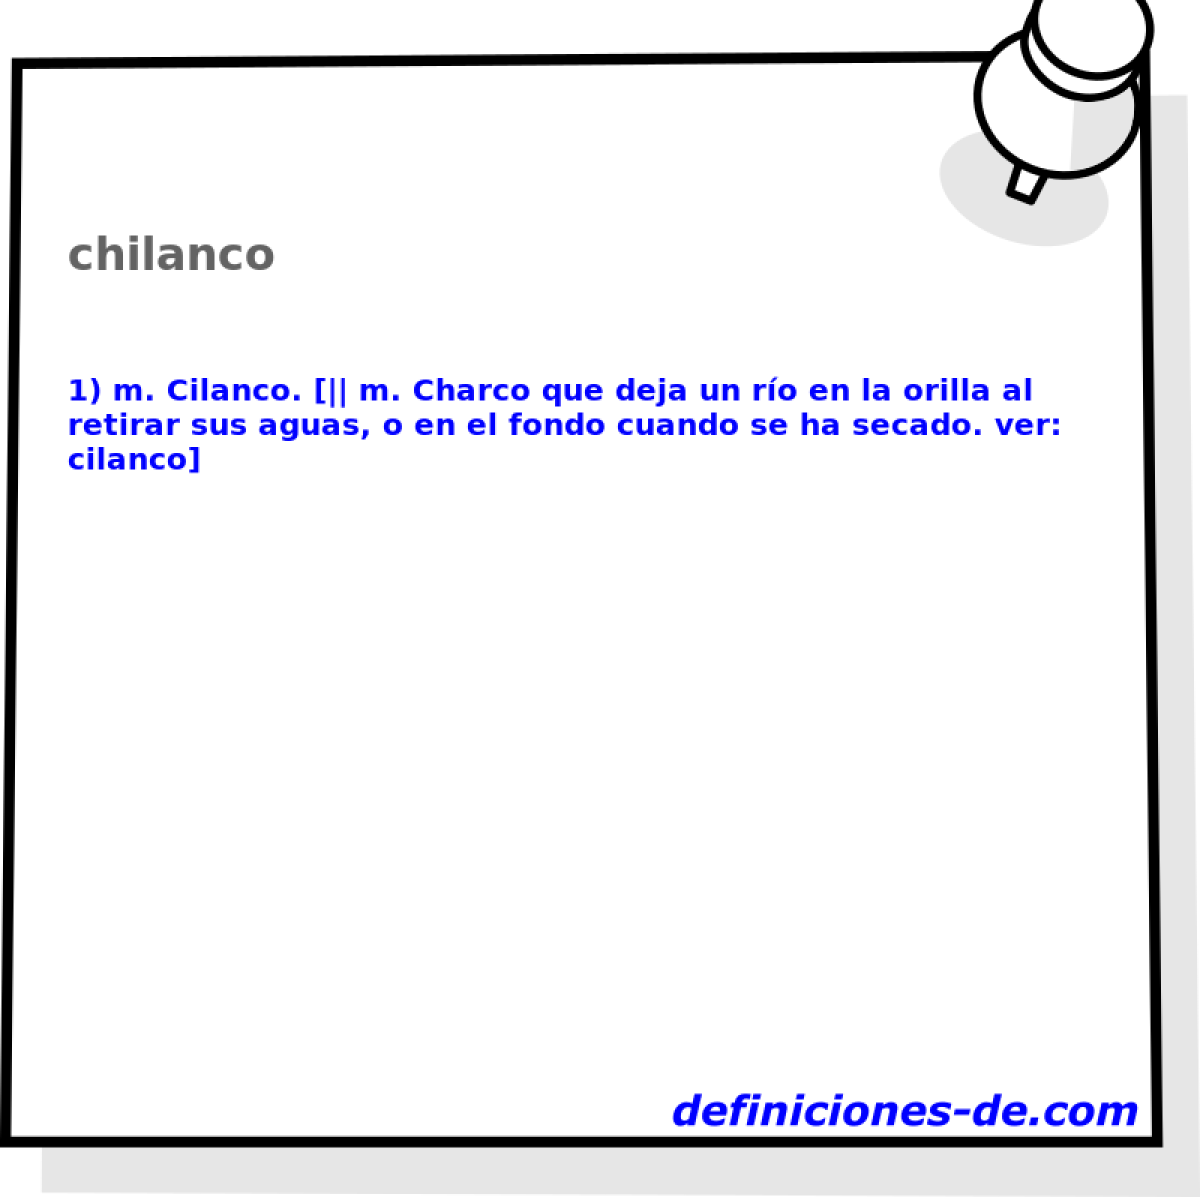 chilanco 